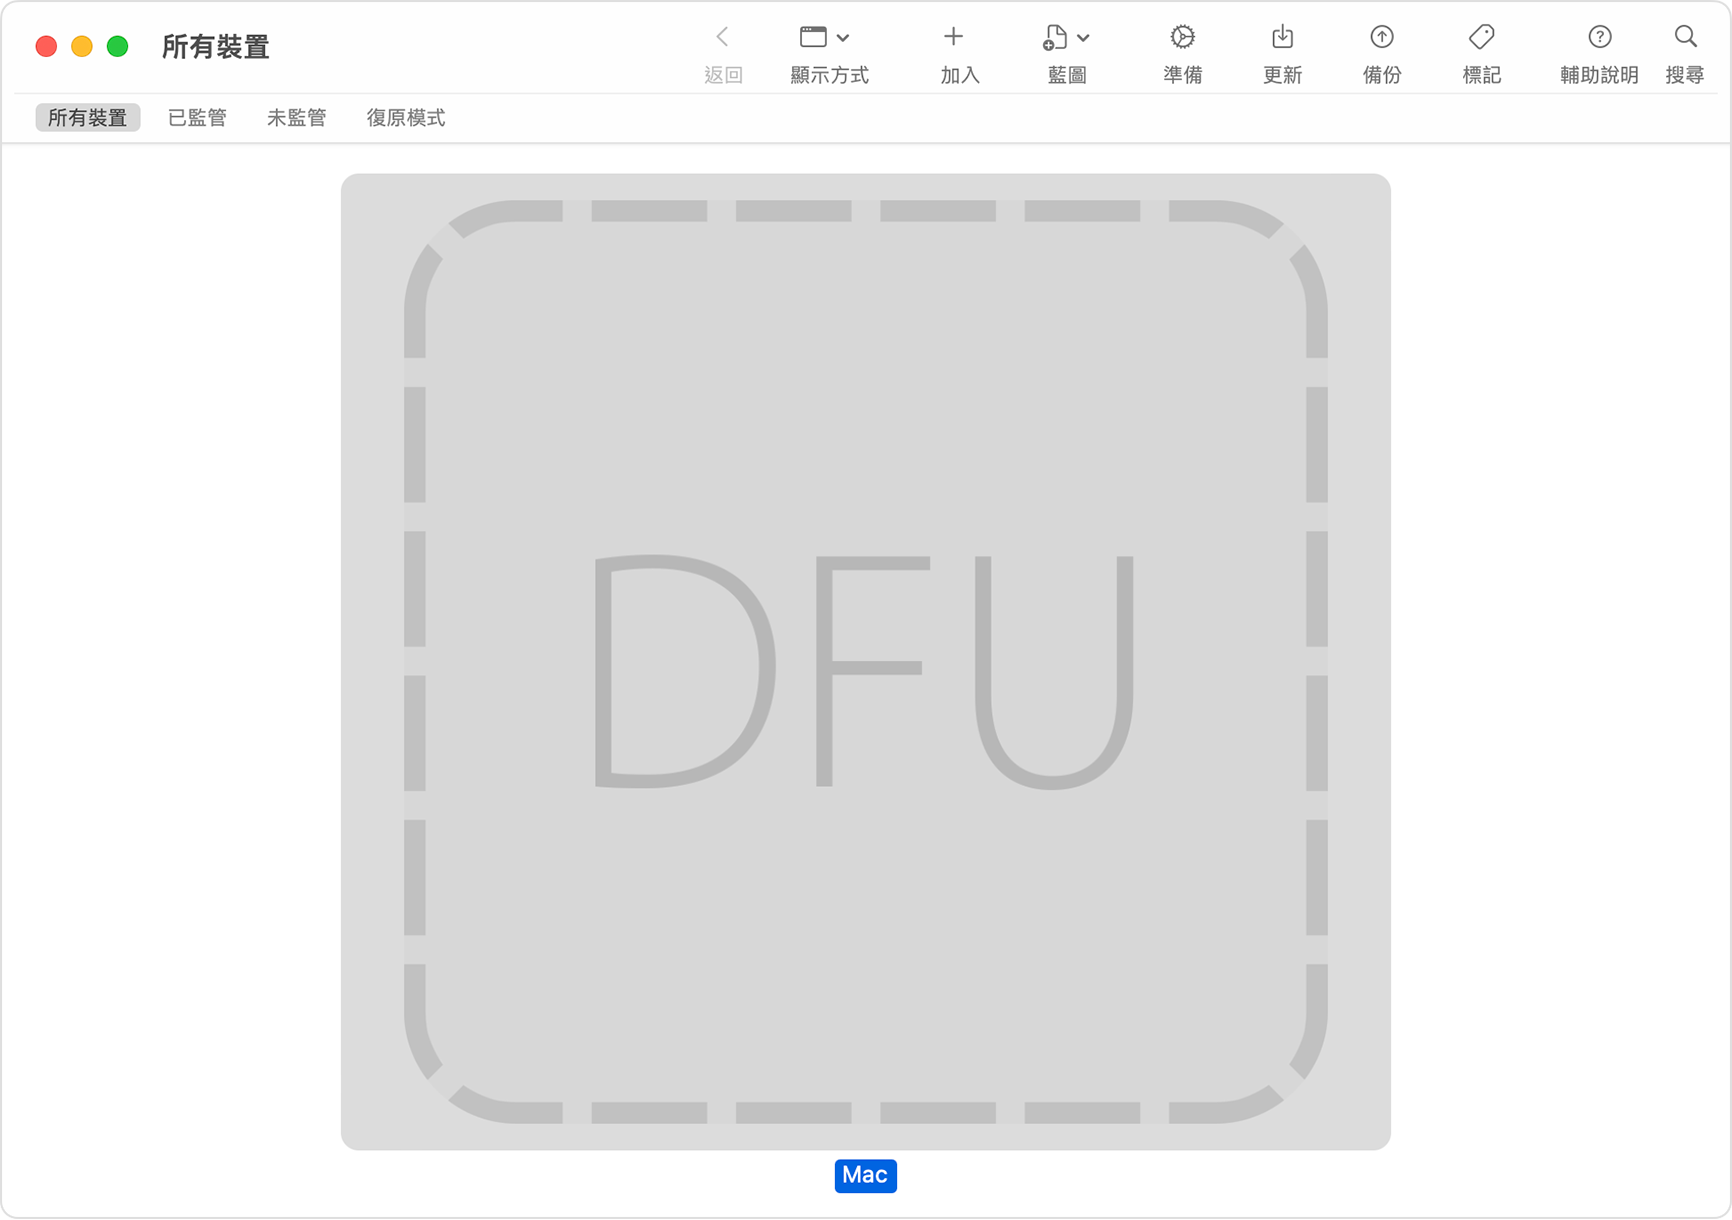 Apple Configurator 視窗顯示已經為受影響的 Mac 選取「DFU」